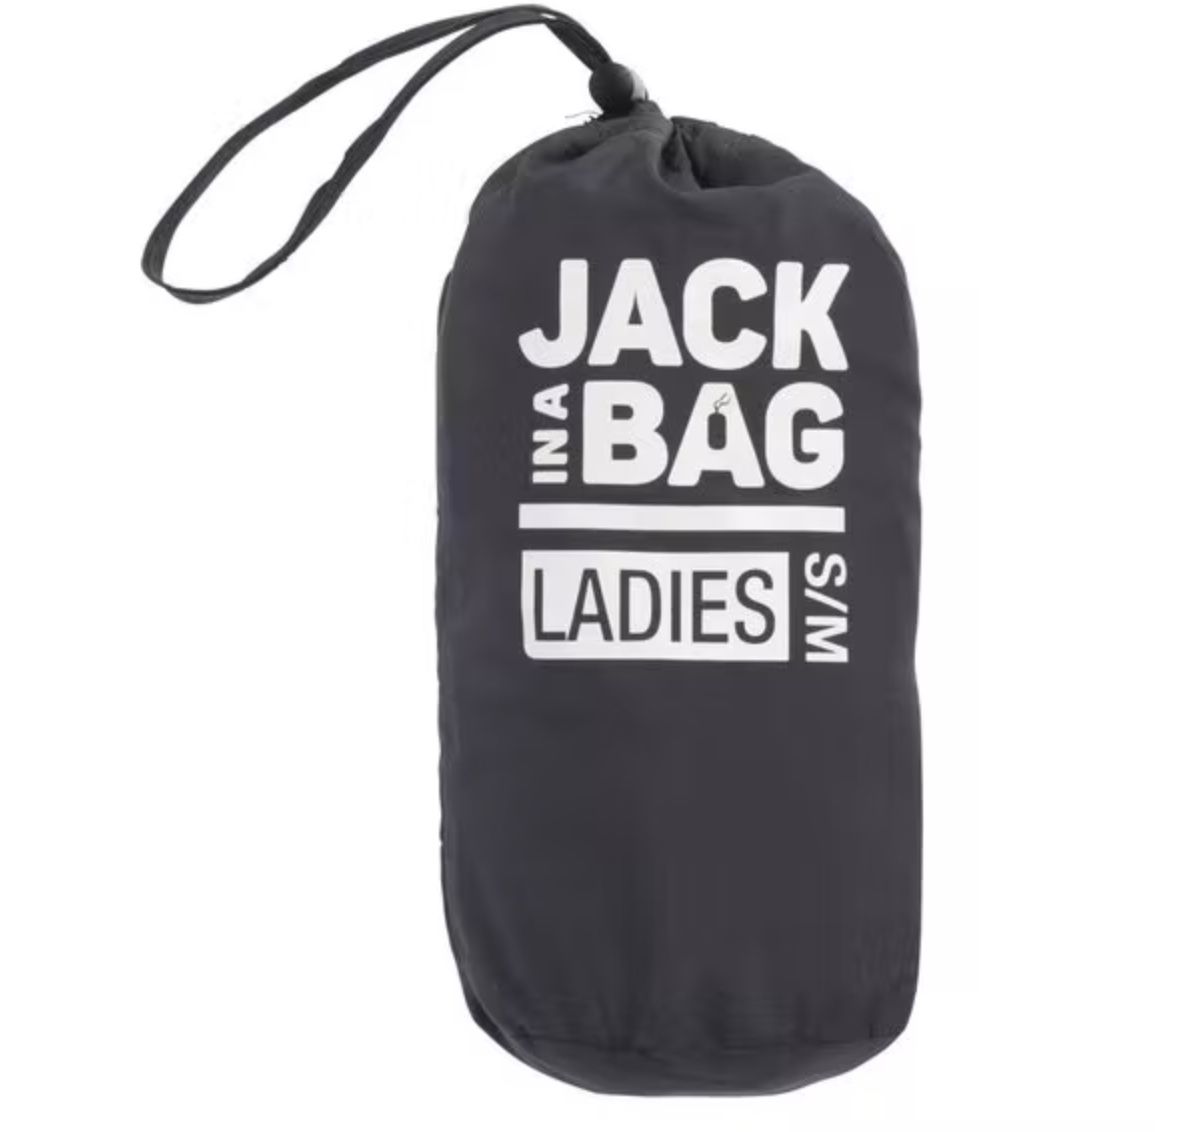 Jack in a Bag Lightweight Jacke für 14,18€